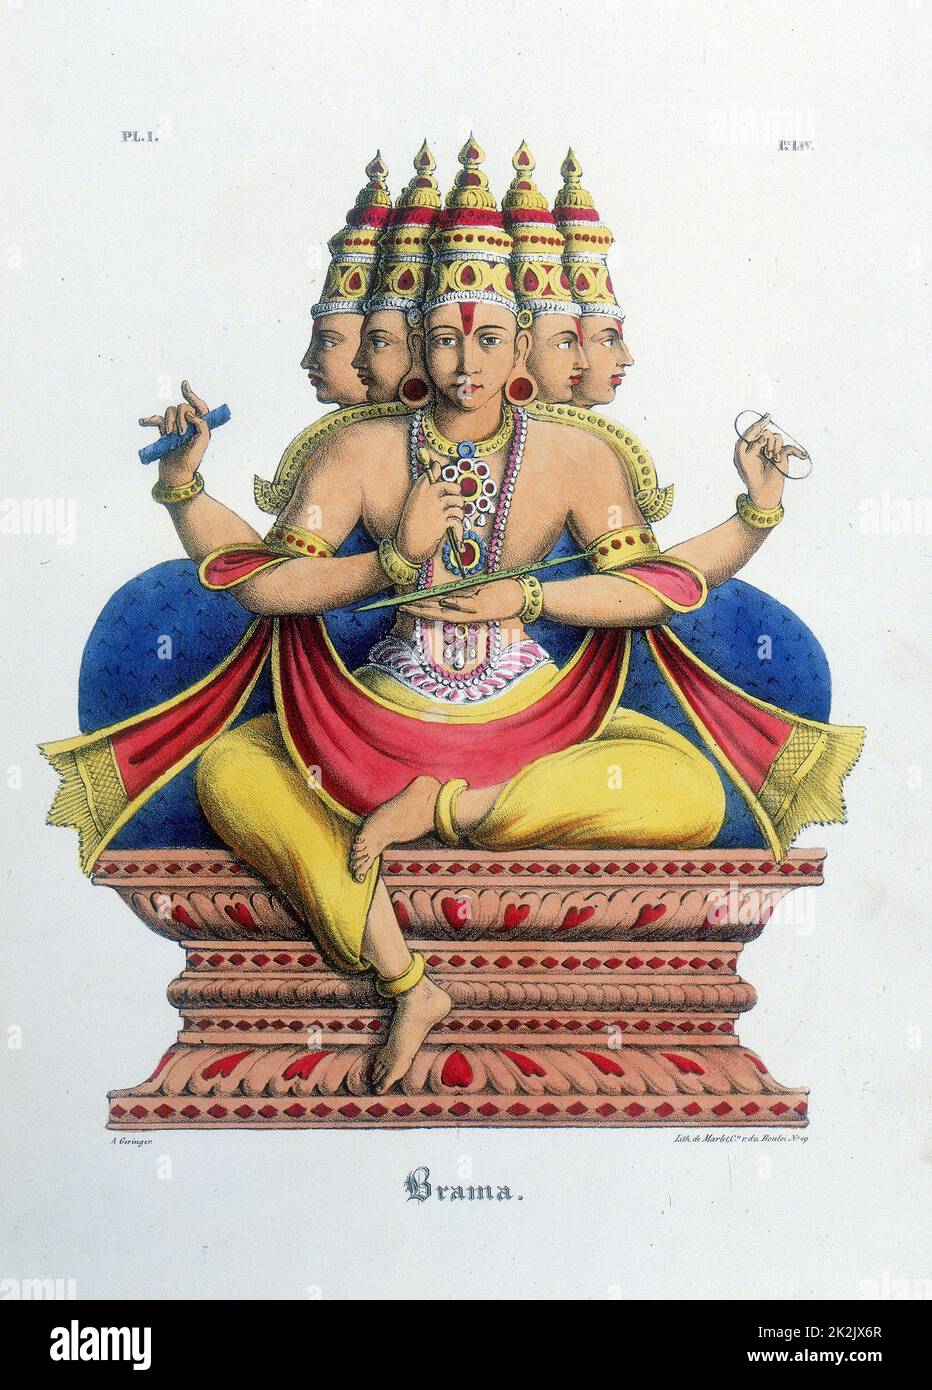 BRAHMA, erster gott der Hindu-trinität (trimurti), Schöpfer des Universums. Lithographie von L'Inde Francaise, 1828 Stockfoto